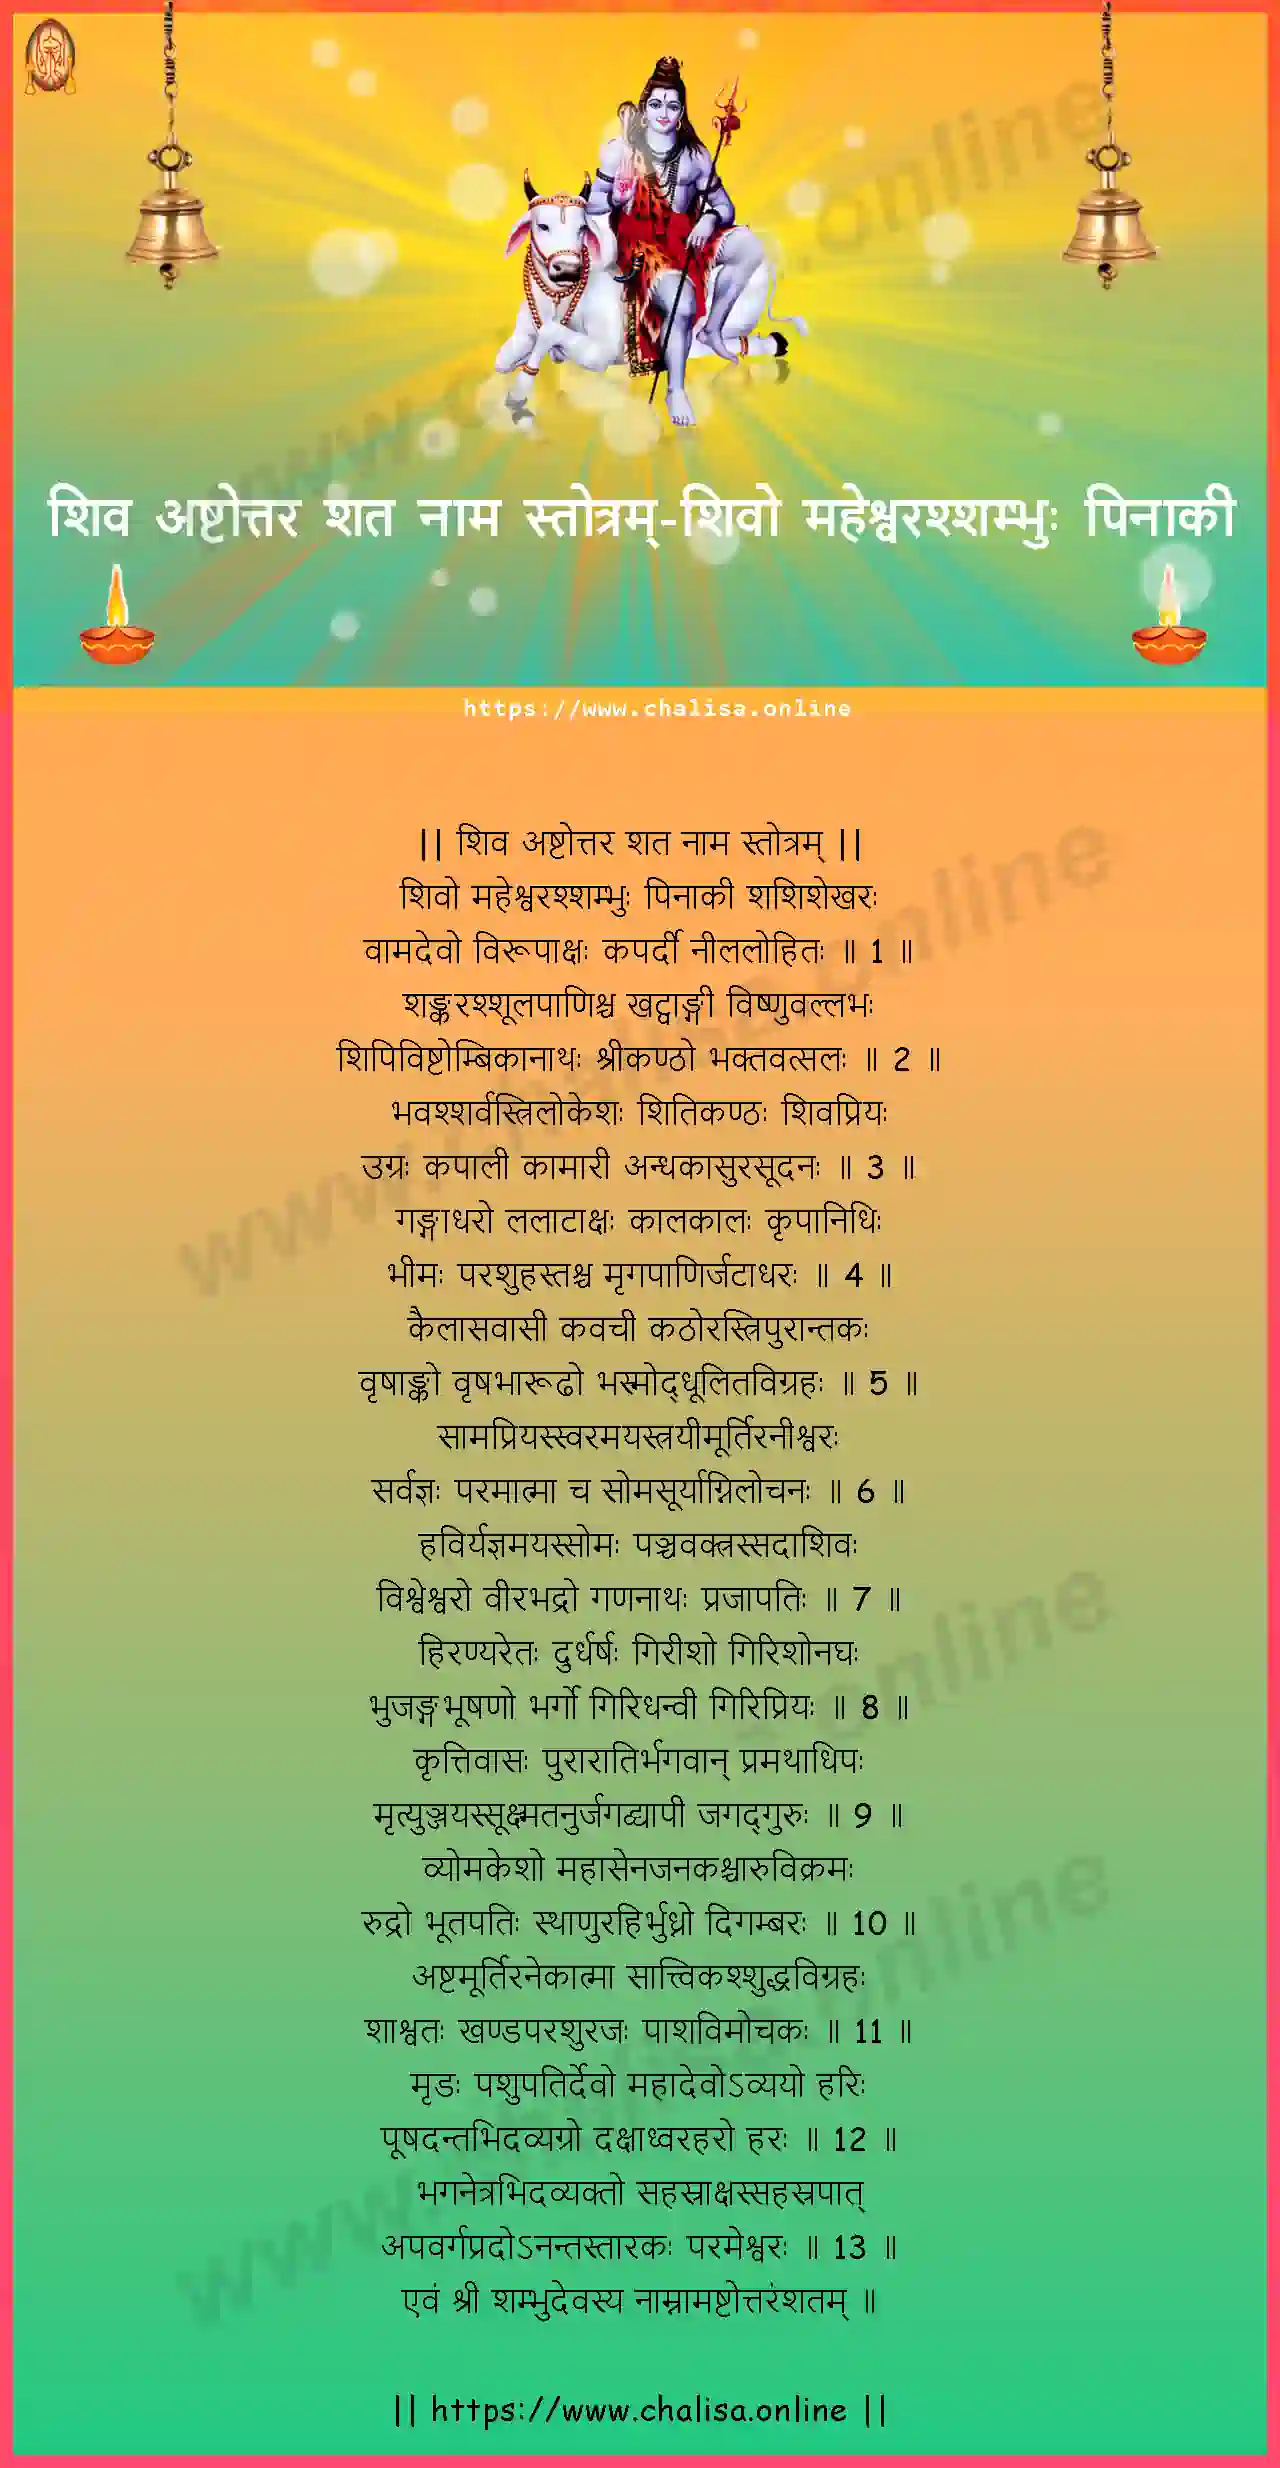 -shiva-ashtottara-sata-nama-stotram-sanskrit-sanskrit-lyrics-download